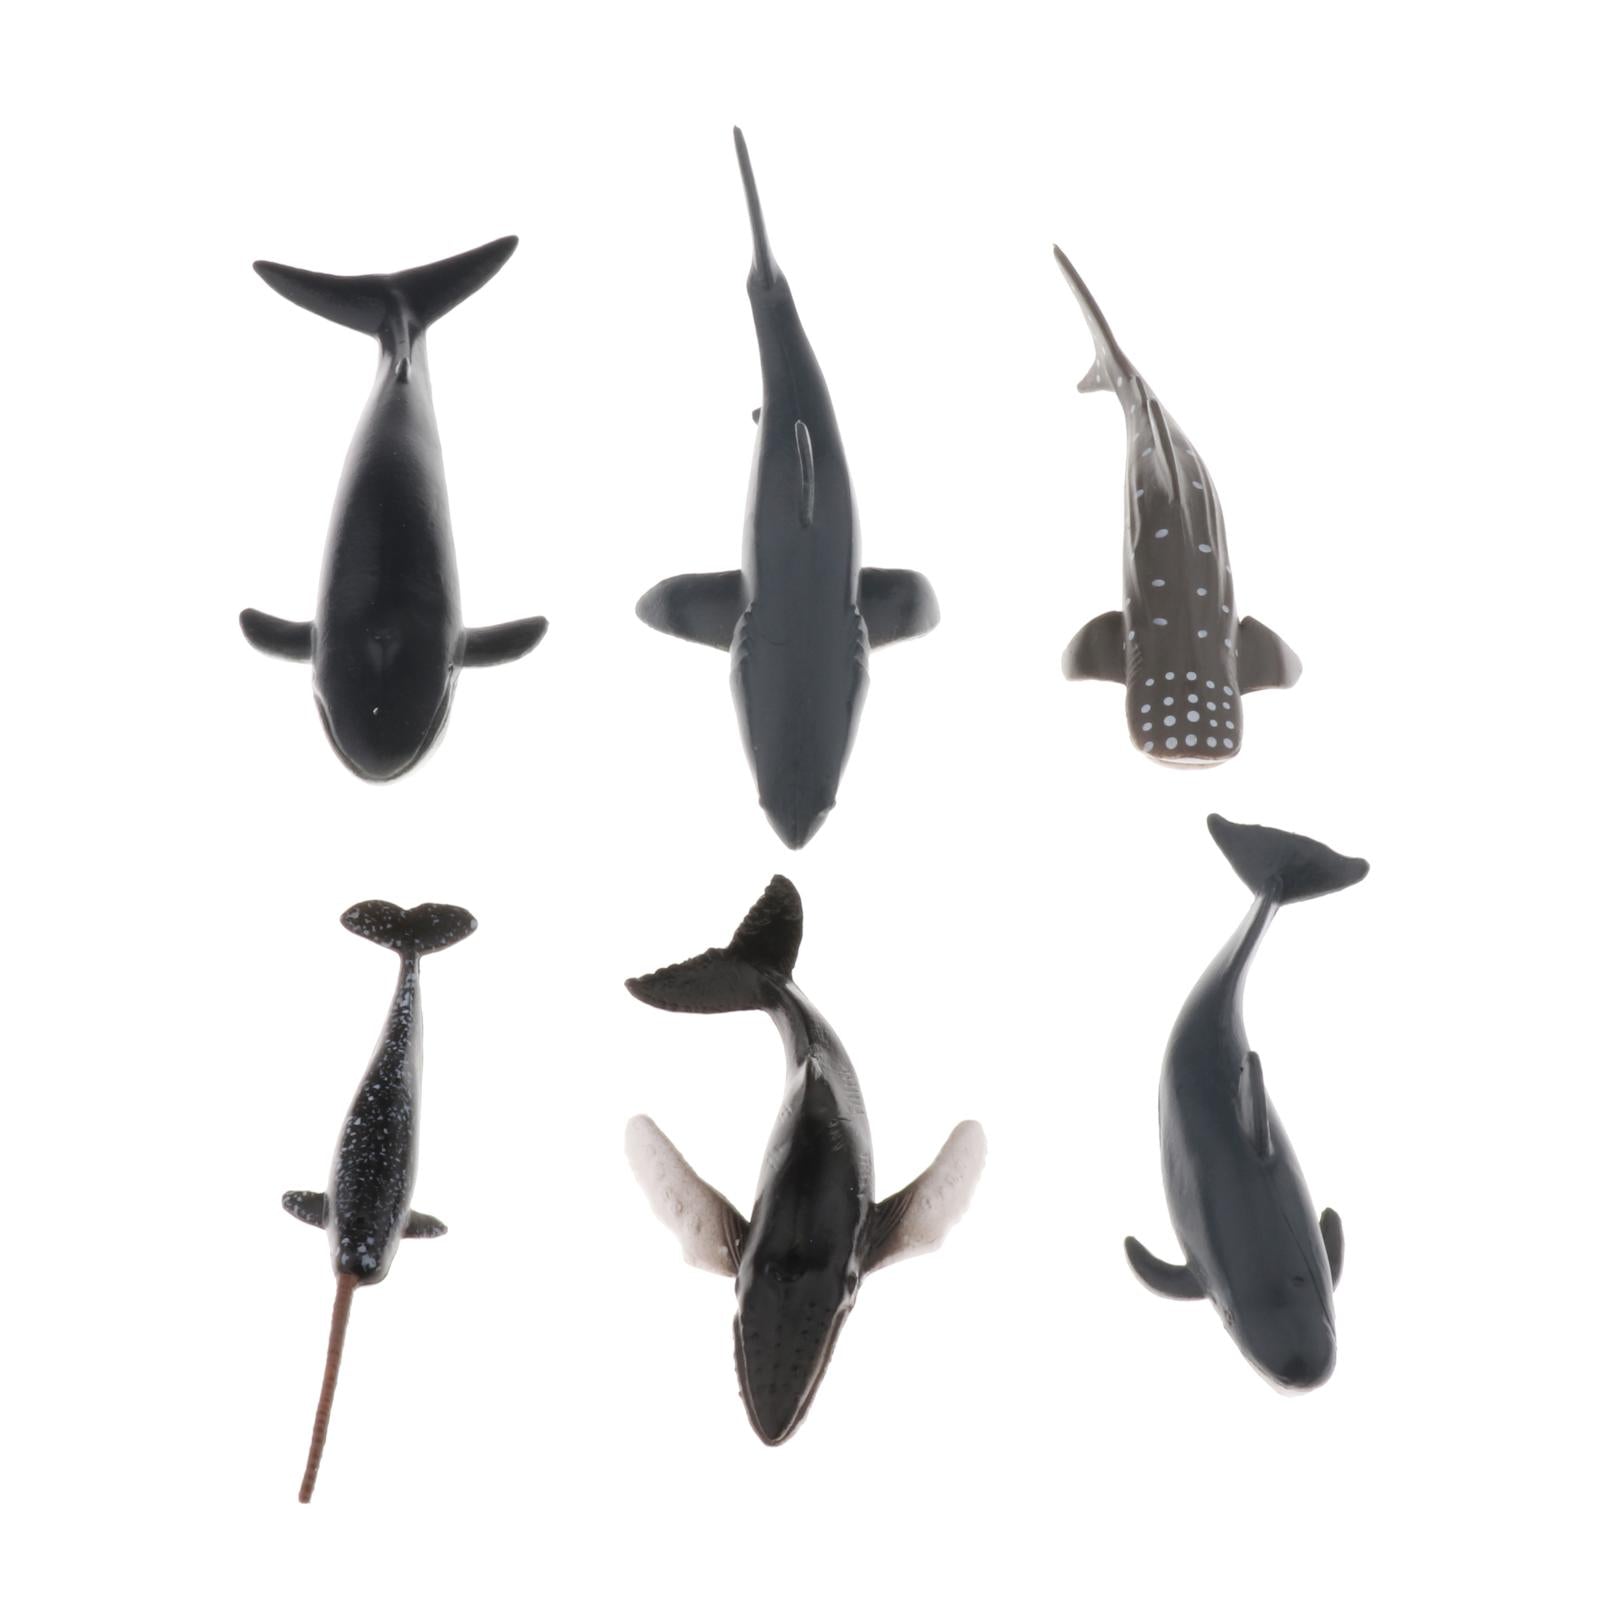 Solid Plastic Lifelike Sea Creature Figures Mini Whale Figurines Models Bulk